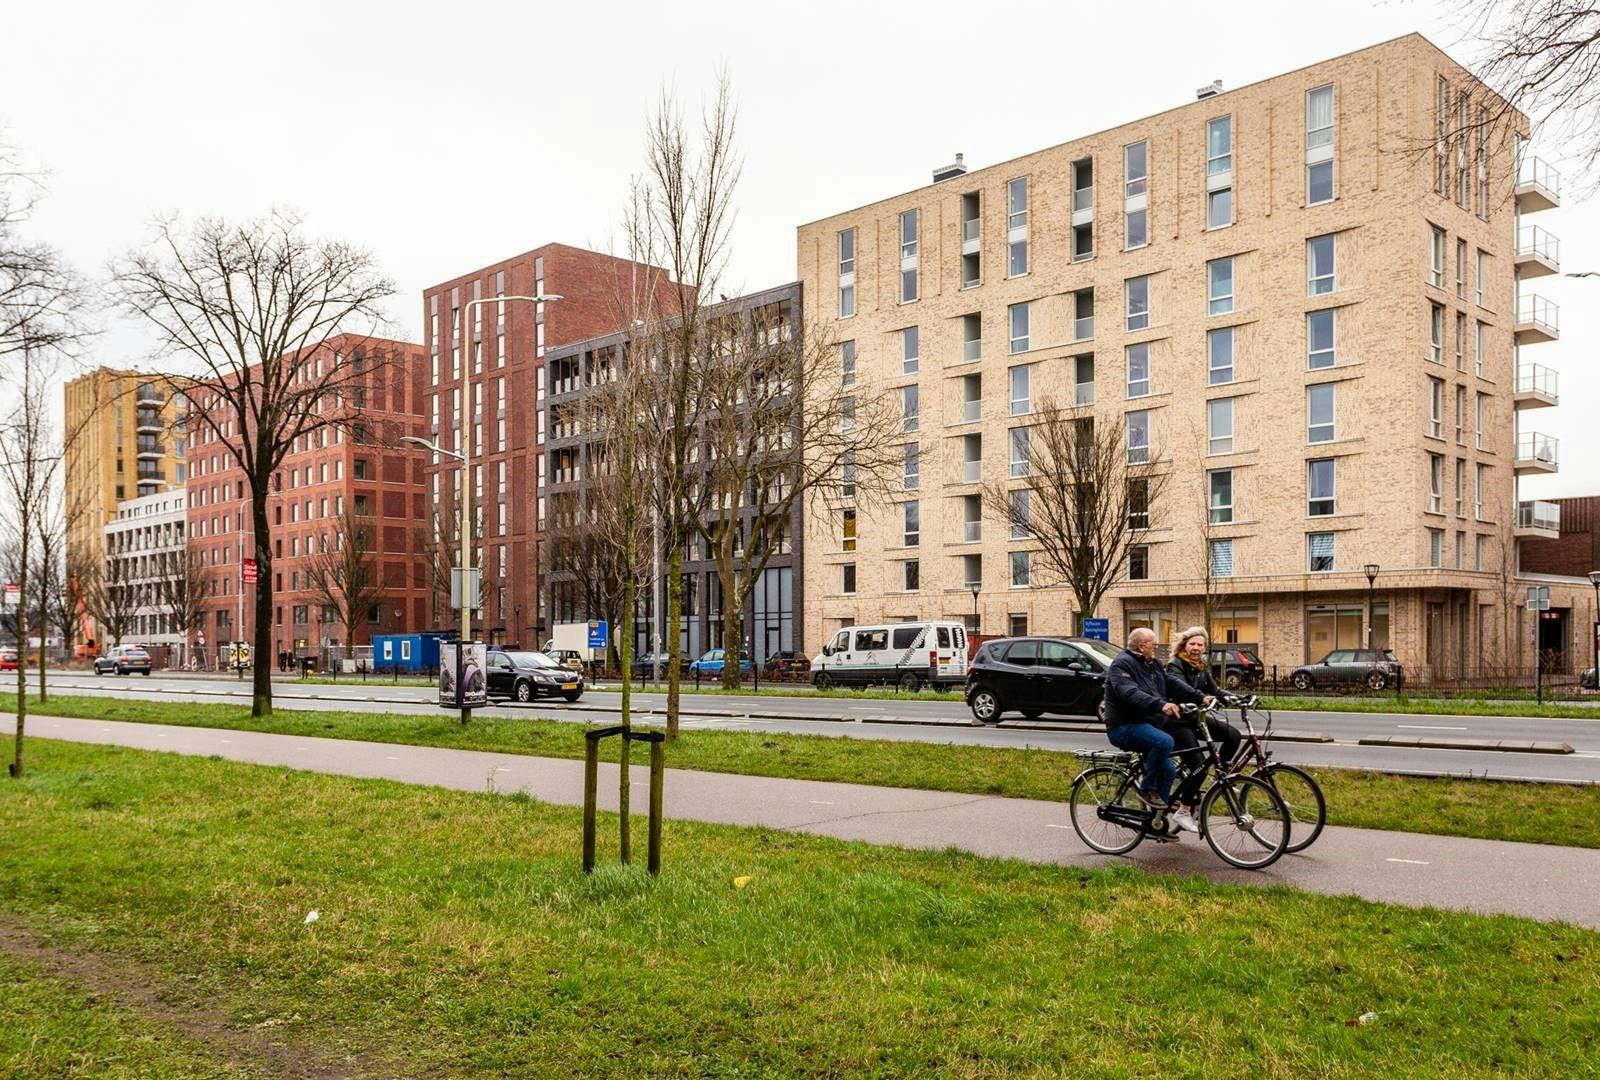 Ontwikkelcombinatie 023 realiseert 188 middeldure huurwoningen in Haarlem